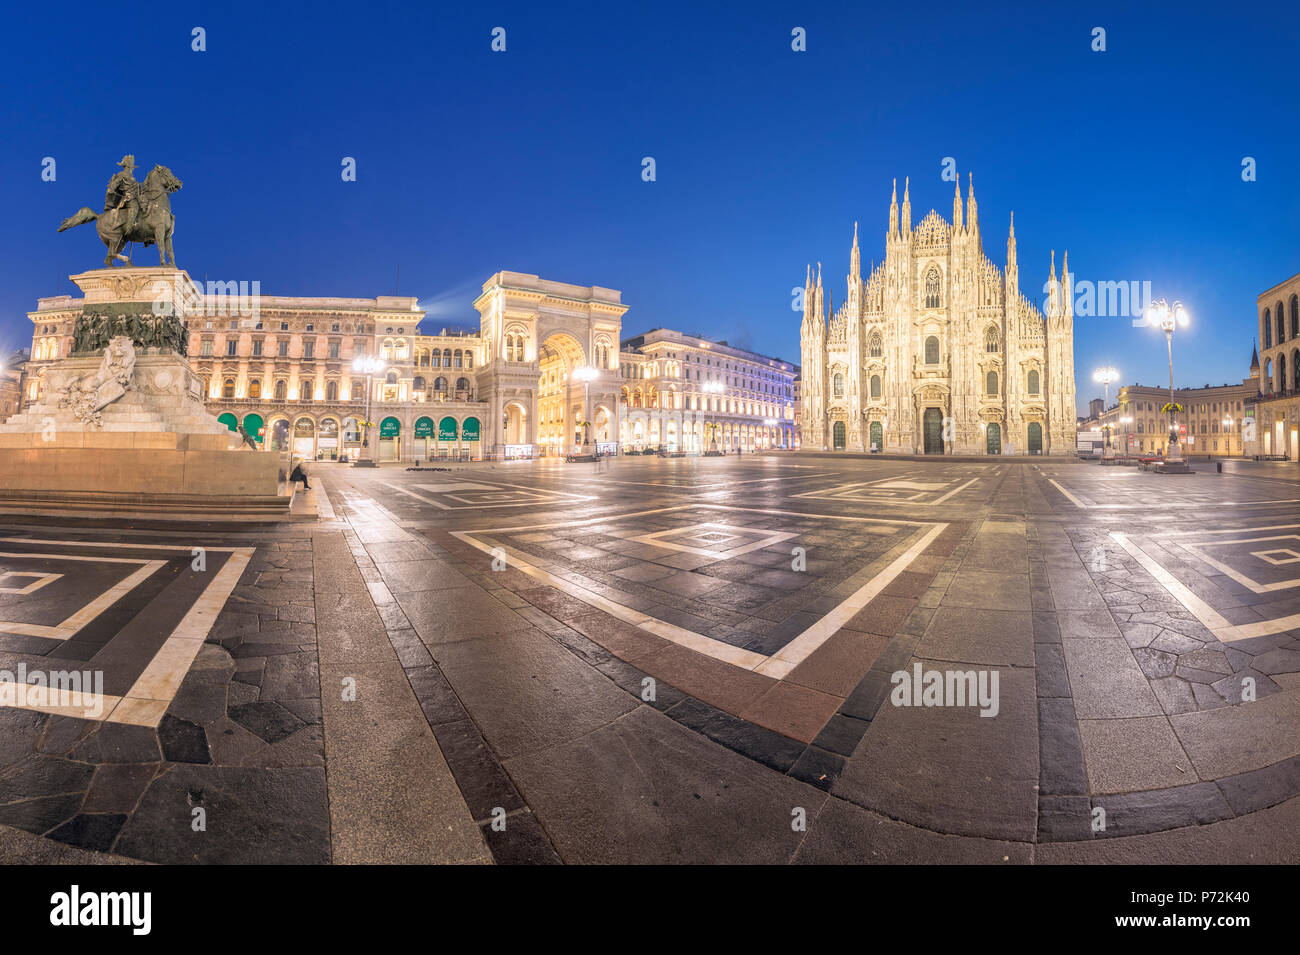 Vue panoramique de la cathédrale de Milan (Duomo) et de la Galleria Vittorio Emanuele II, au crépuscule, Milan, Lombardie, Italie, Europe Banque D'Images